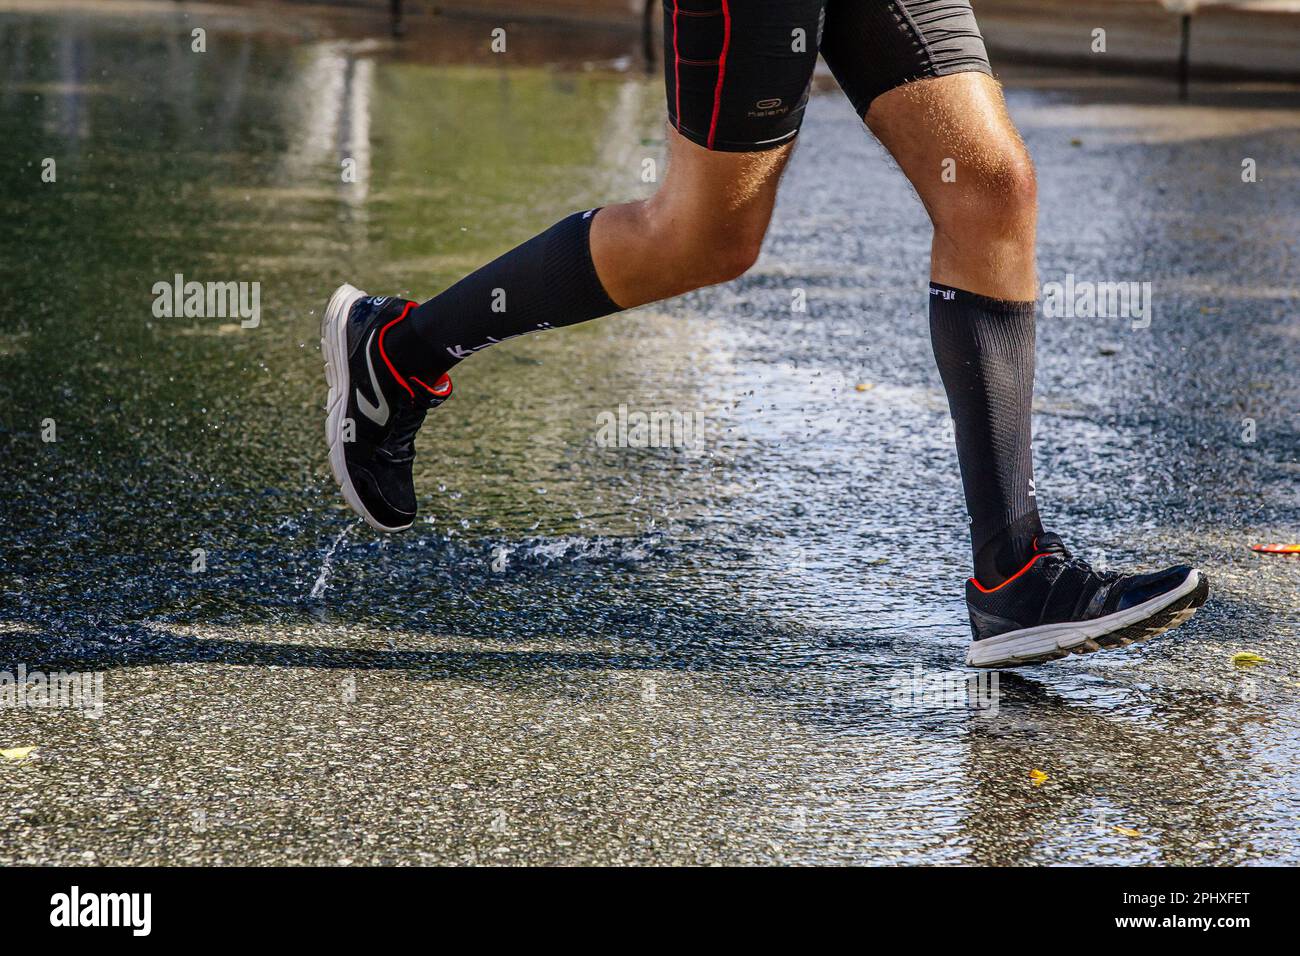 Männlicher Läufer, der sich auf der Wasserstraße beim Marathonrennen, Schuhen, Kompressionssocken und Strumpfhosen der französischen Laufmarke Kalenji bewegt Stockfoto